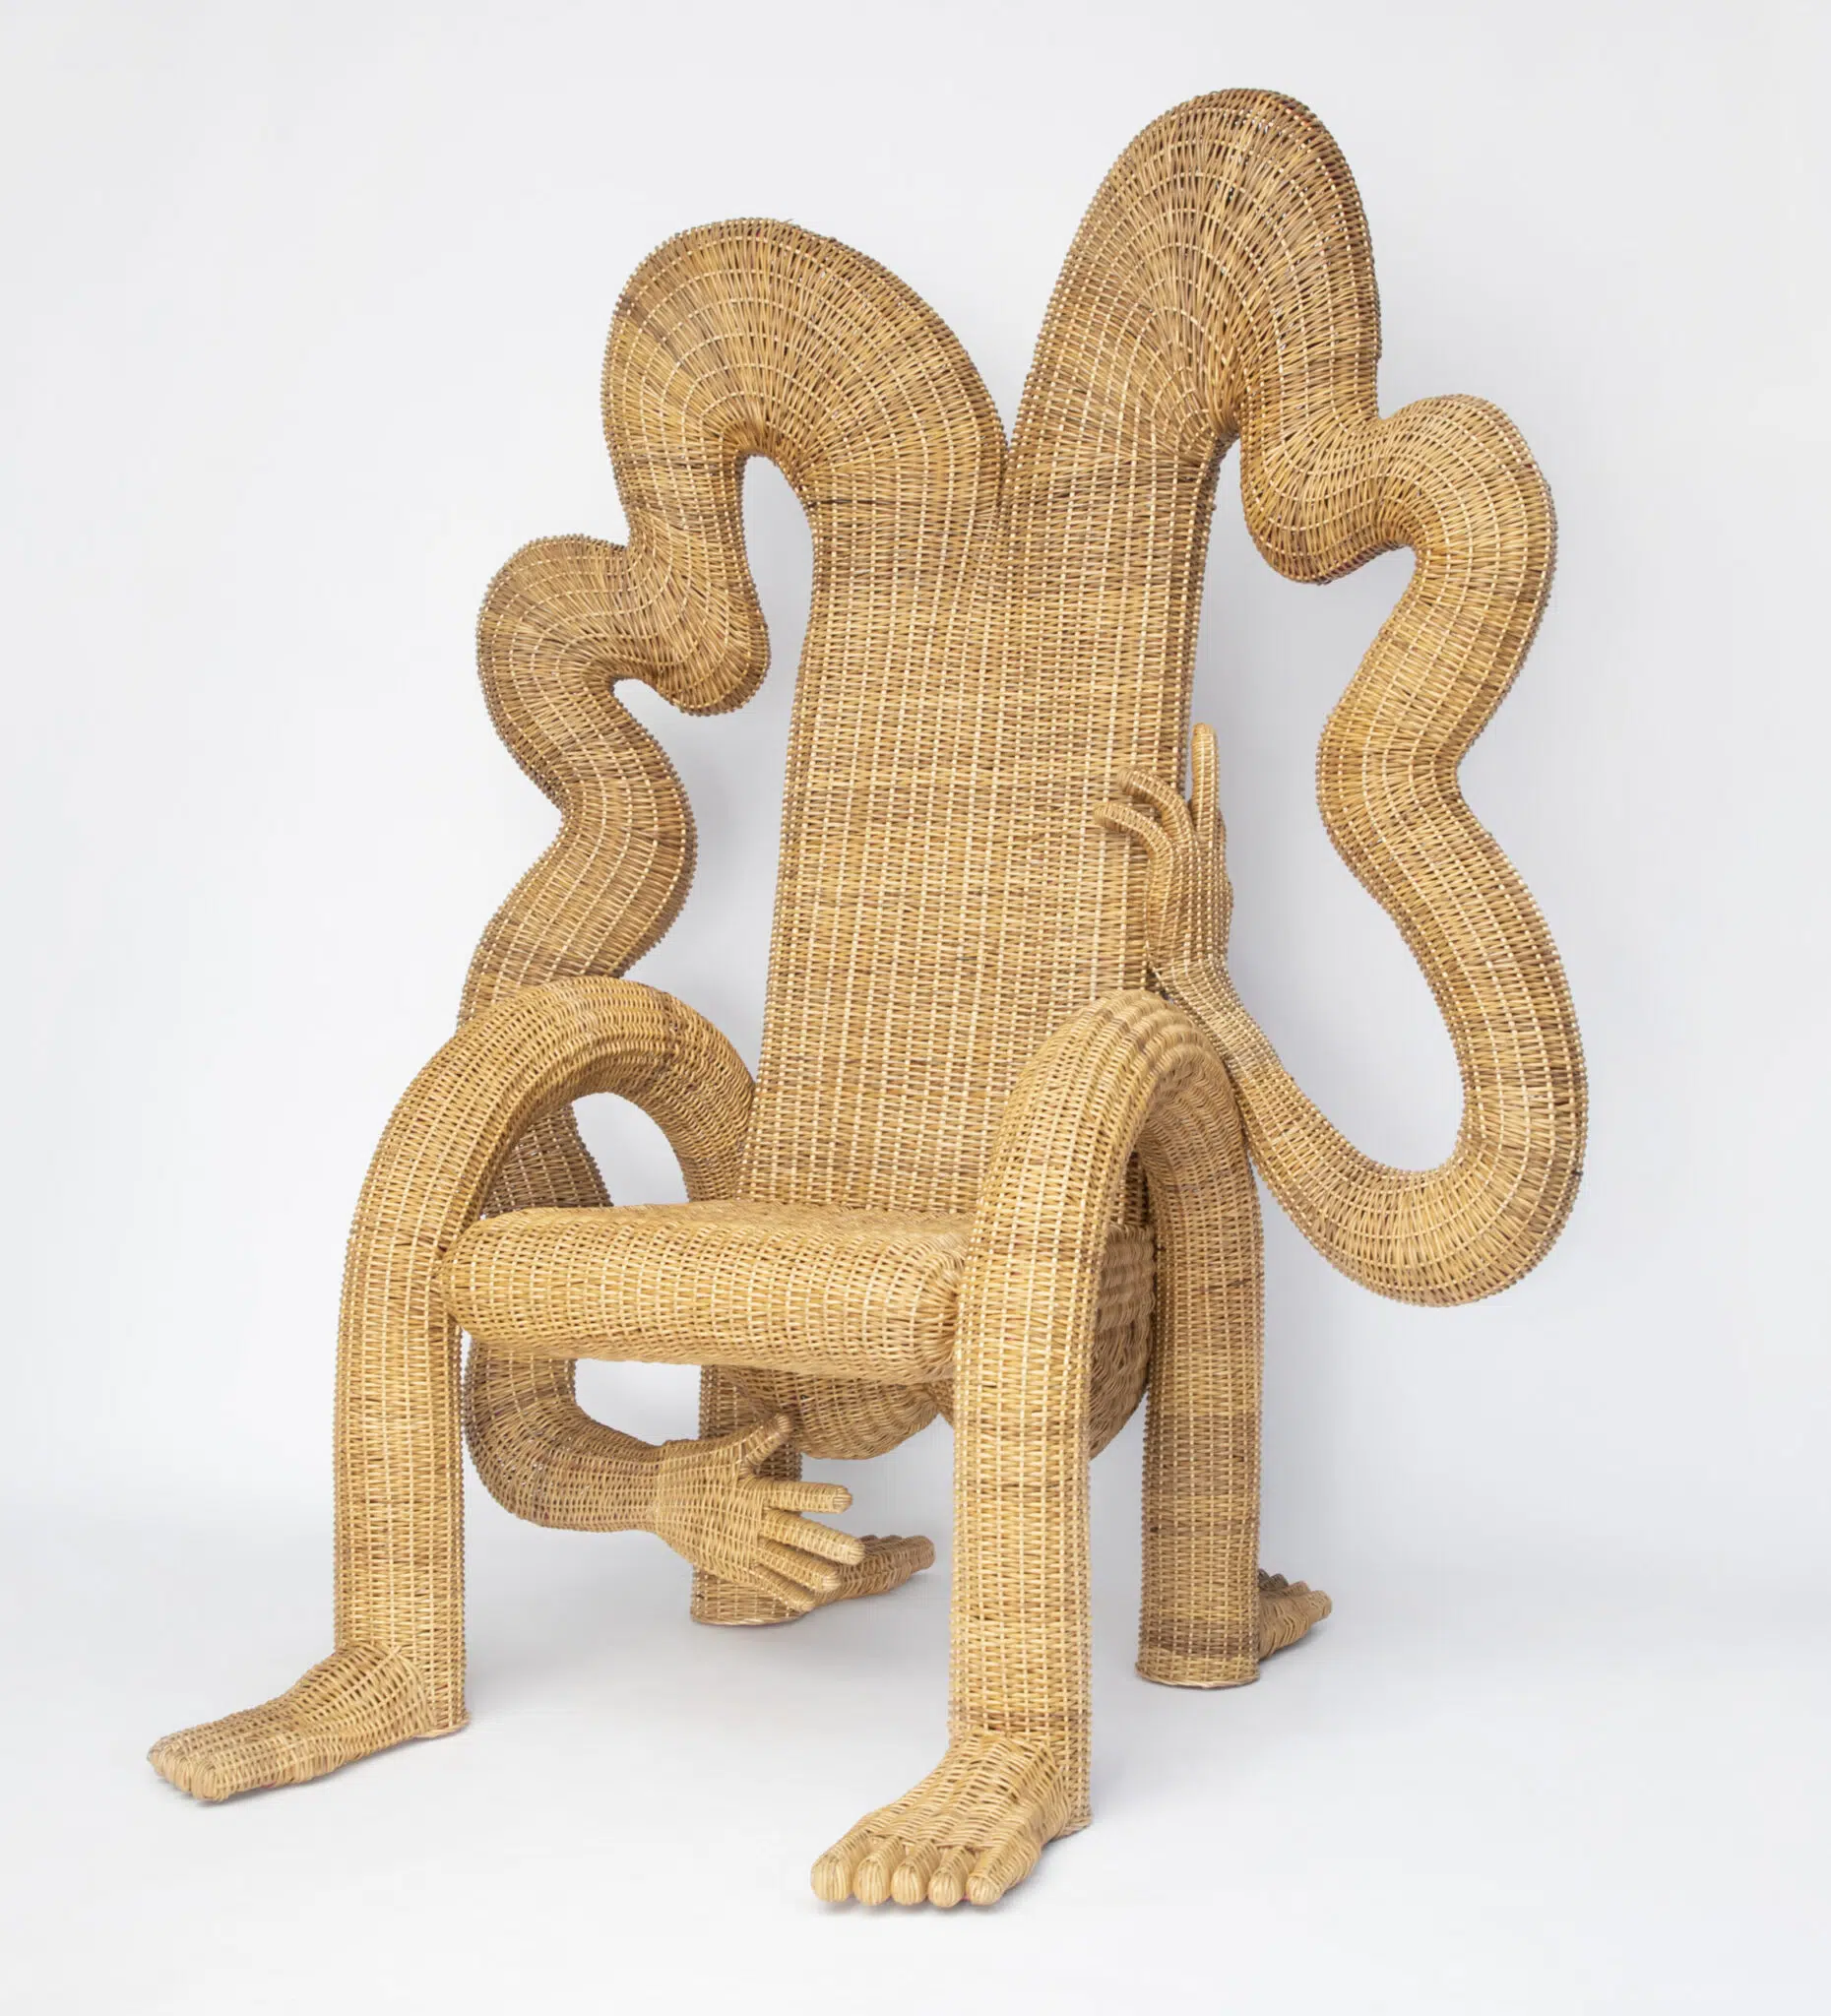 Chris Wolston sillas de mimbre forma humana